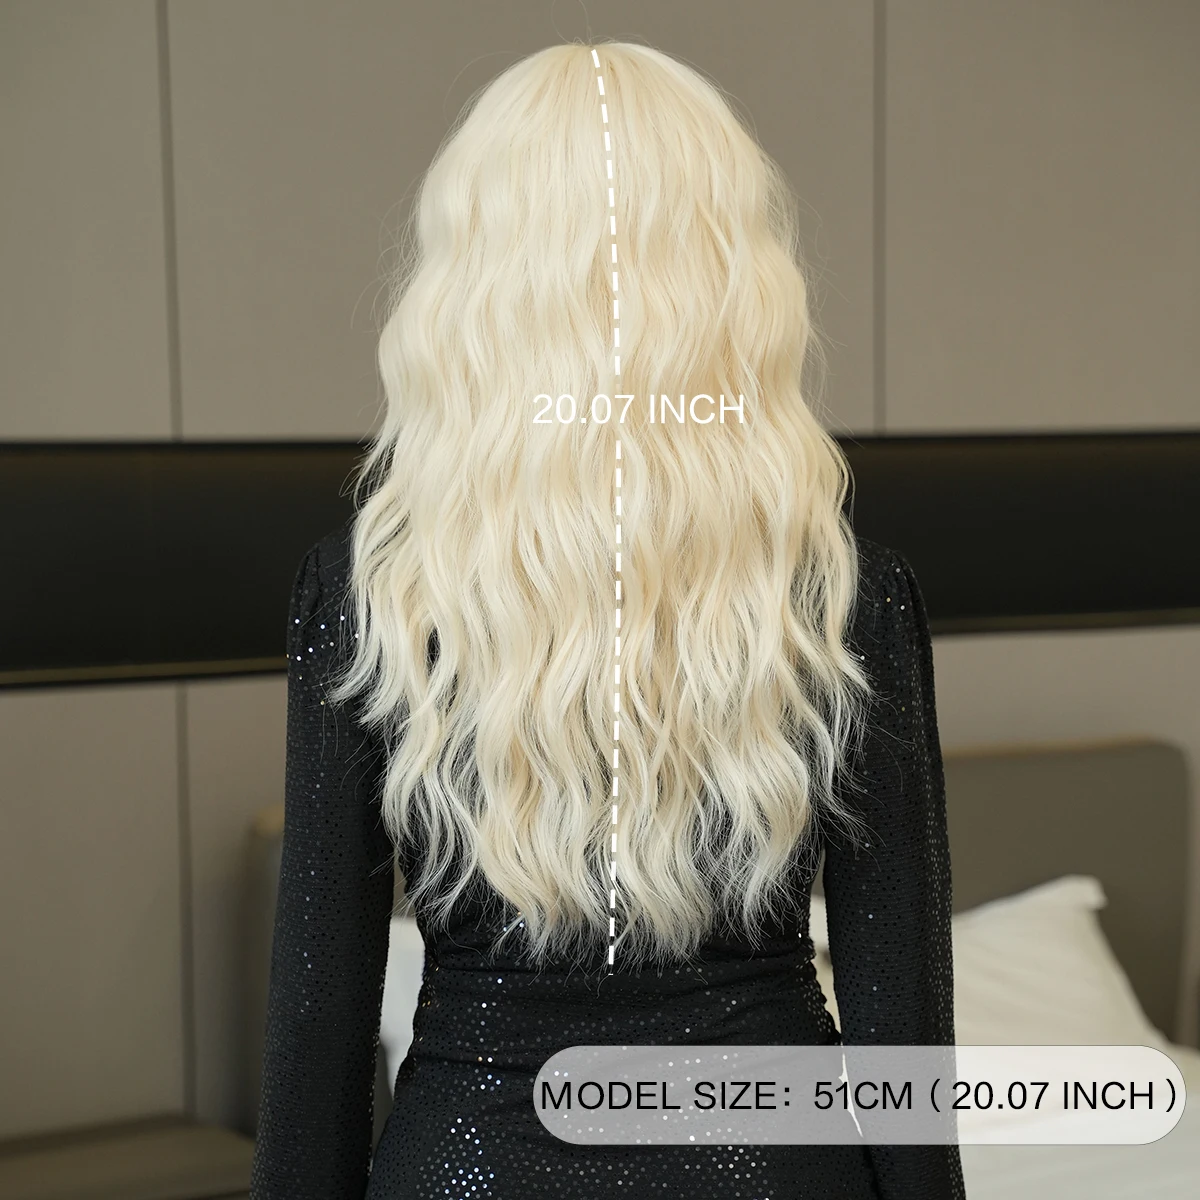 7JHH-Peluca de cabello sintético para mujer, postizo largo y ondulado, suelto, con flequillo limpio, color rubio y blanco, de alta densidad, para fiesta diaria